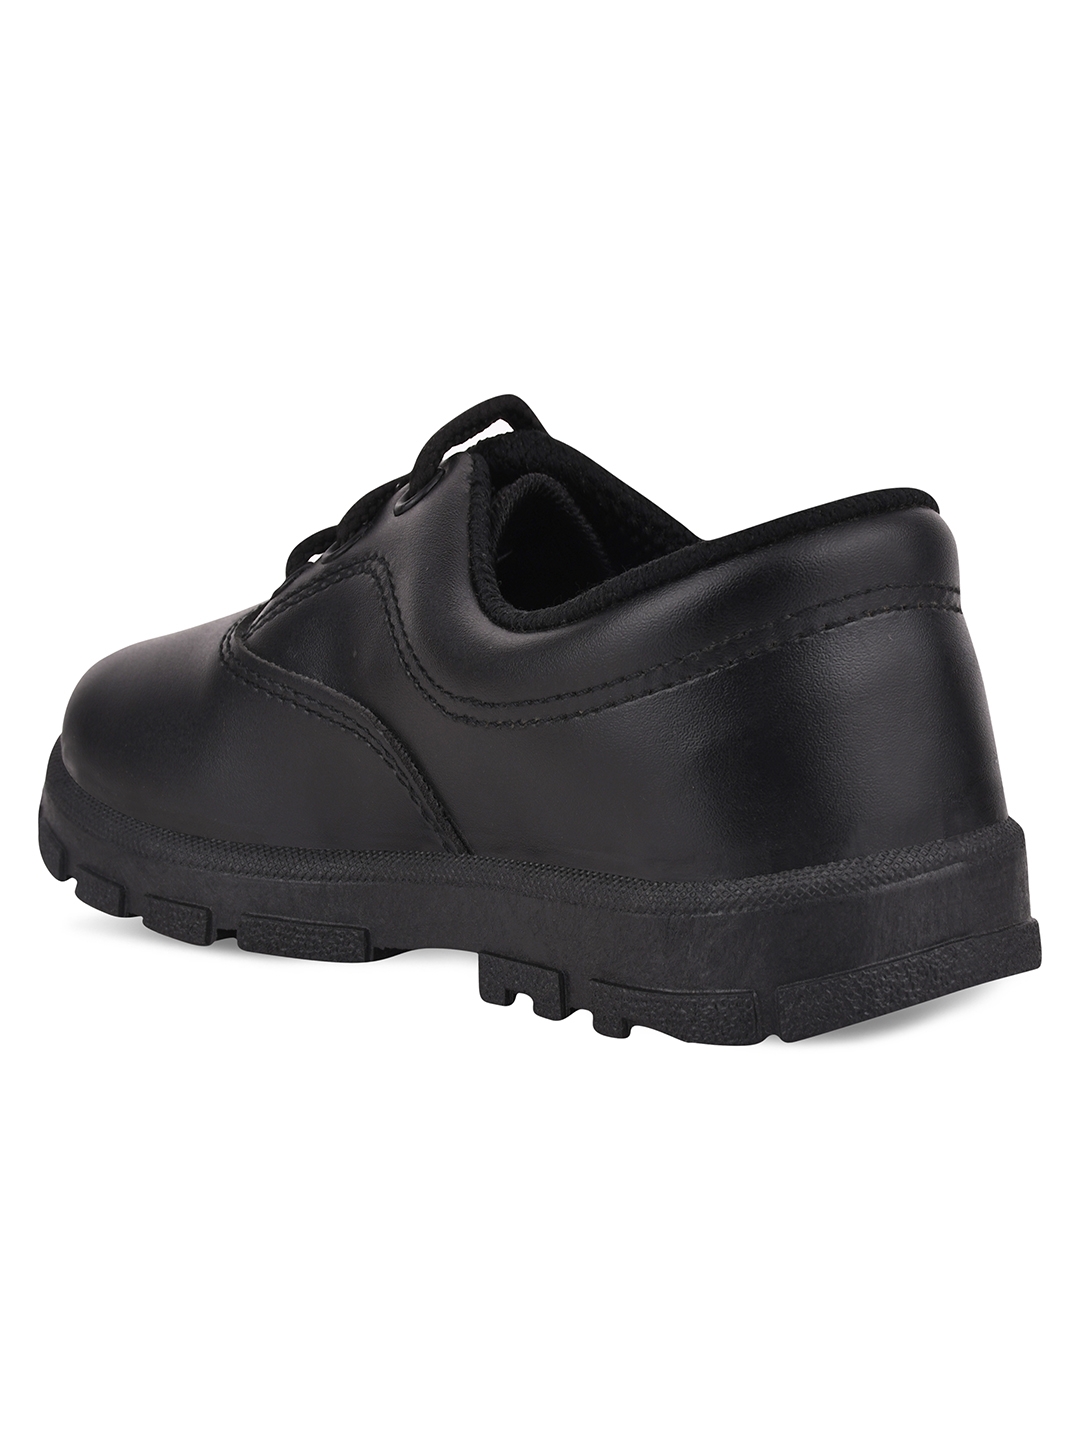 Campus Shoes | Boys Black CS A7S School Shoes 2